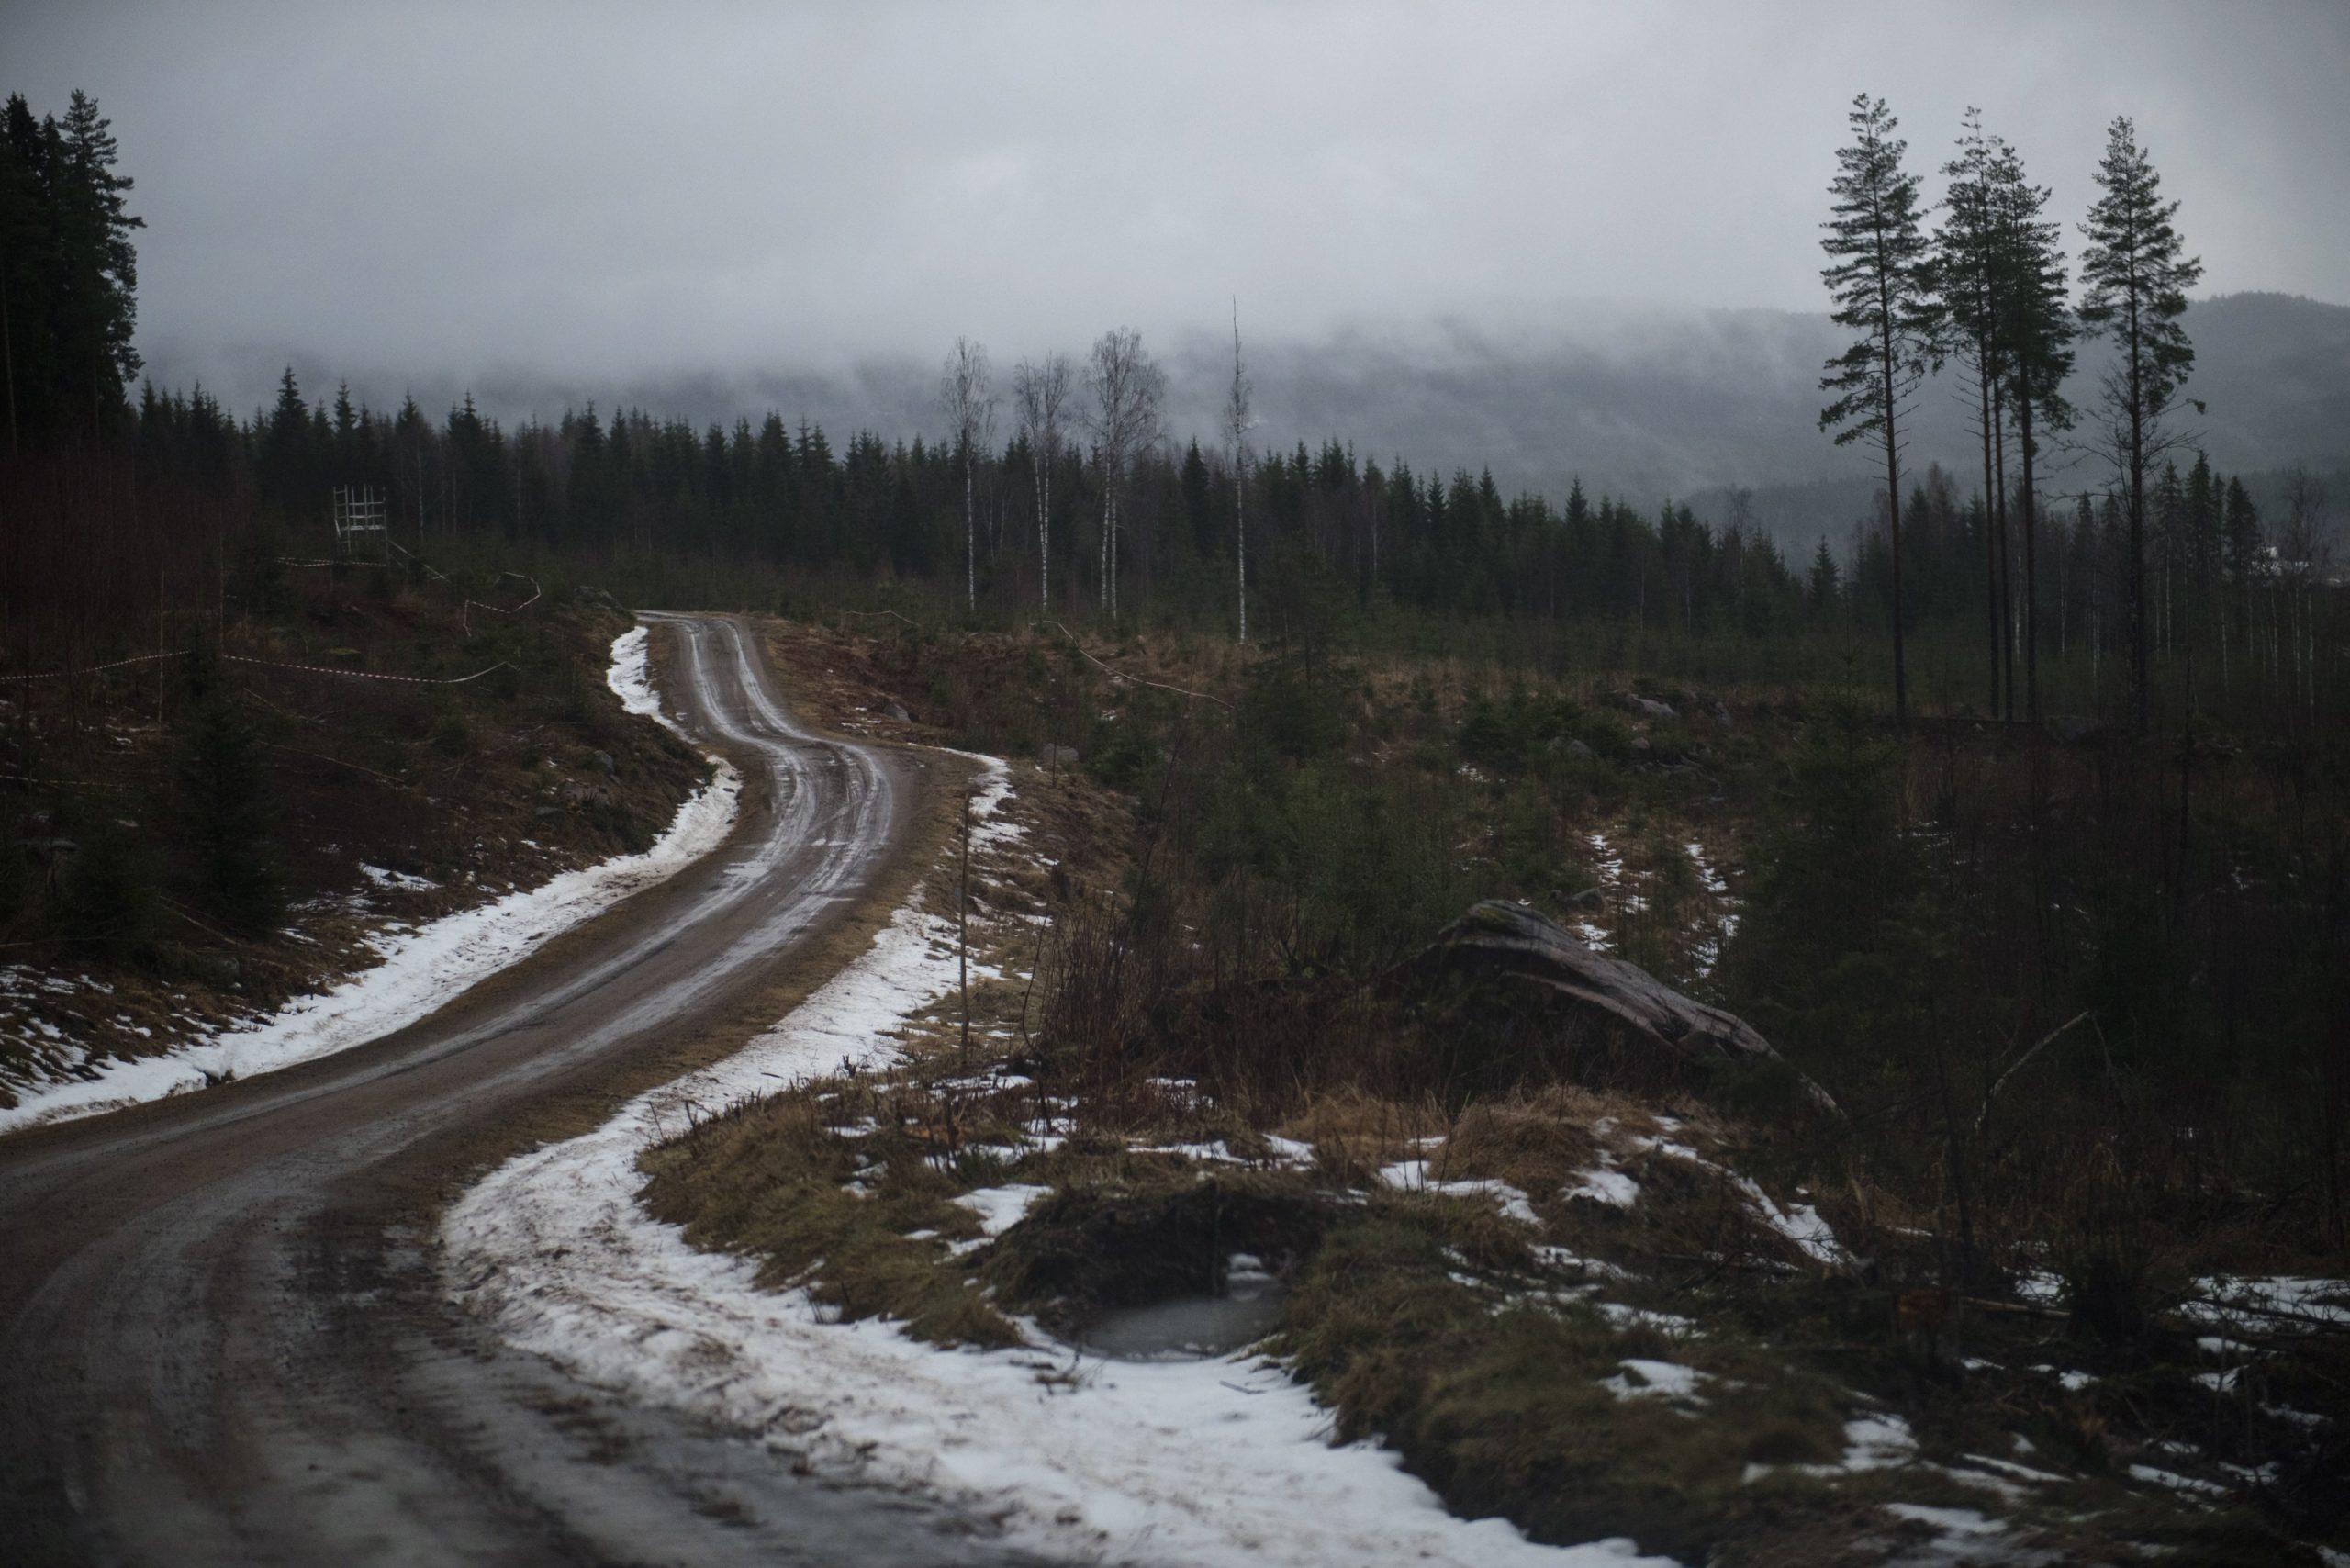 Rootsi 2020 – Lumevaene talveralli